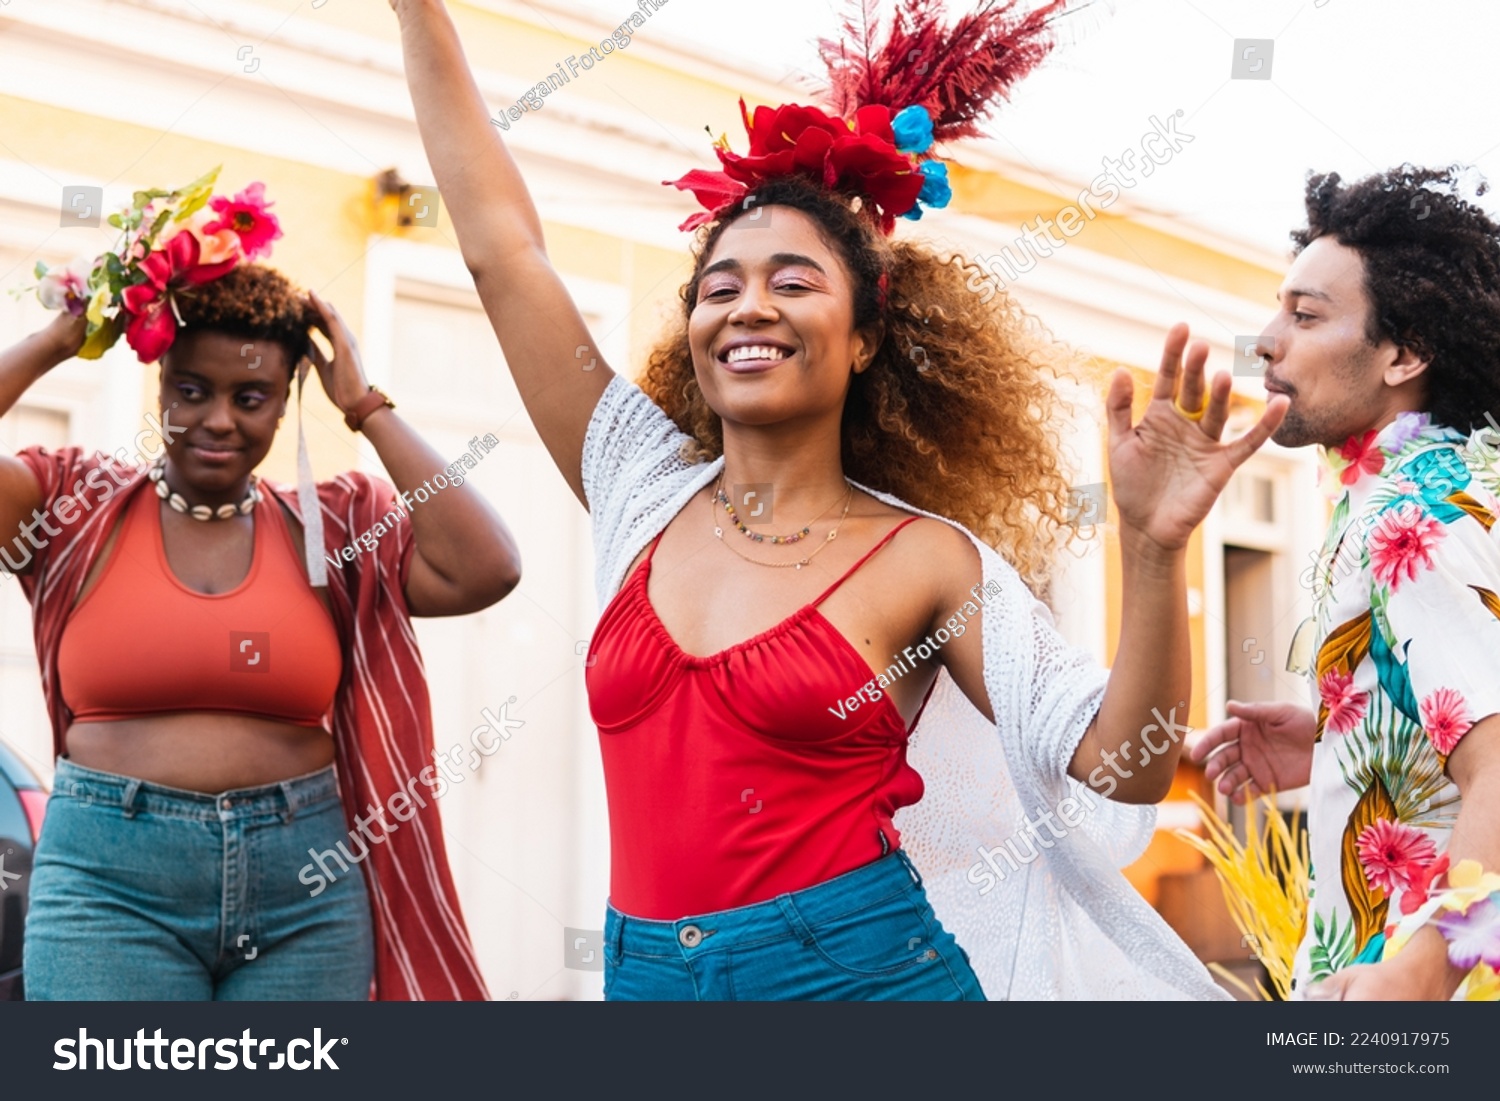 Fun woman dancing Carnival in the street. Brazilian people enjoying Carnaval festival in Brazil #2240917975